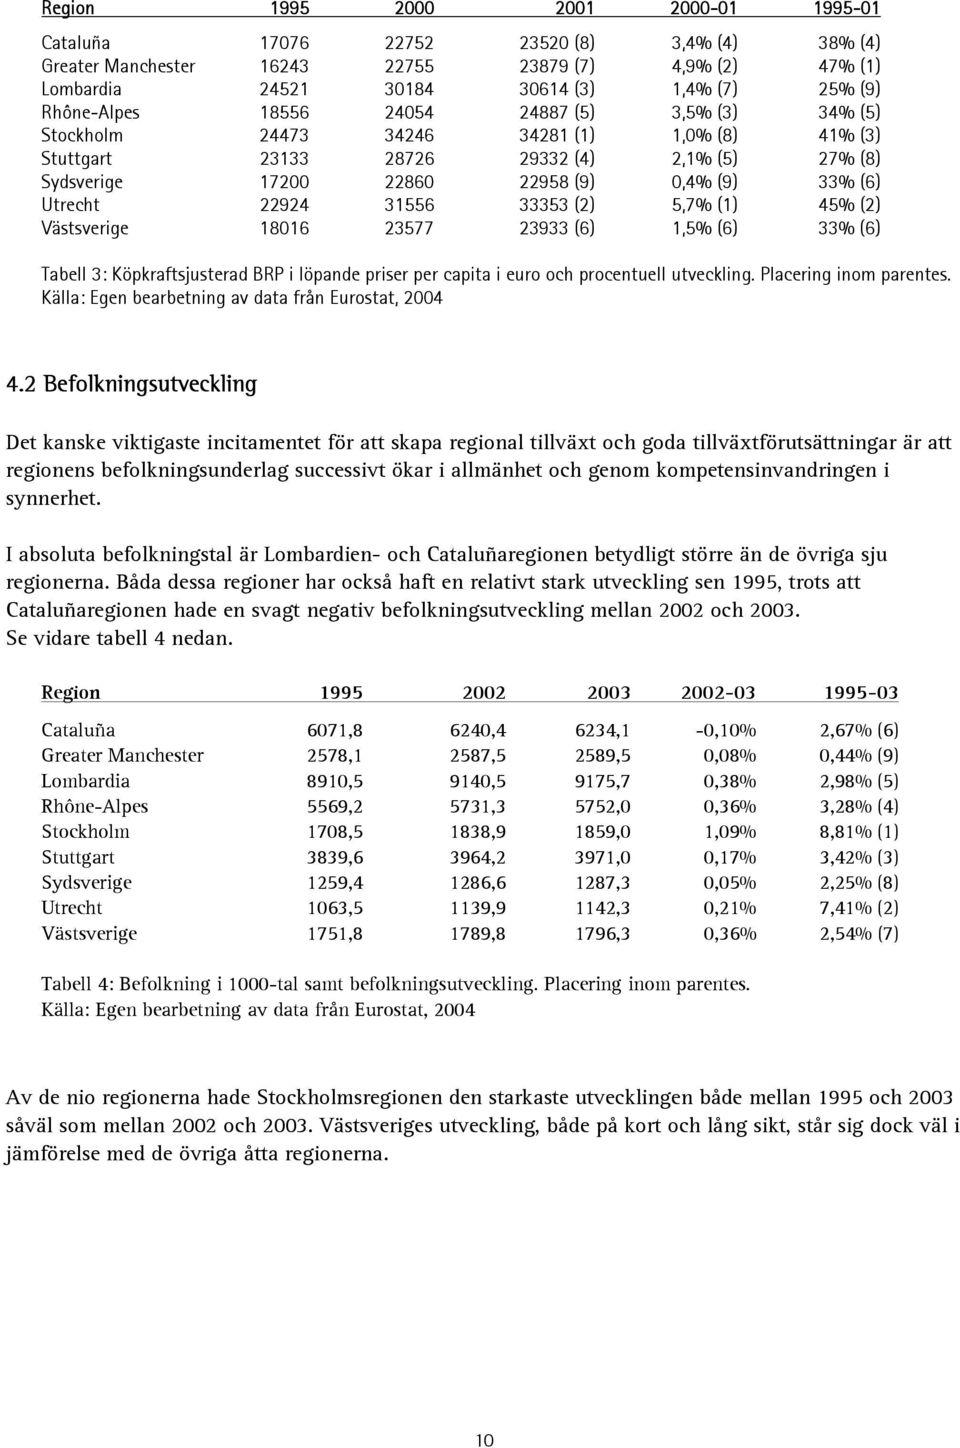 Utrecht 22924 31556 33353 (2) 5,7% (1) 45% (2) Västsverige 18016 23577 23933 (6) 1,5% (6) 33% (6) Tabell 3: Köpkraftsjusterad BRP i löpande priser per capita i euro och procentuell utveckling.